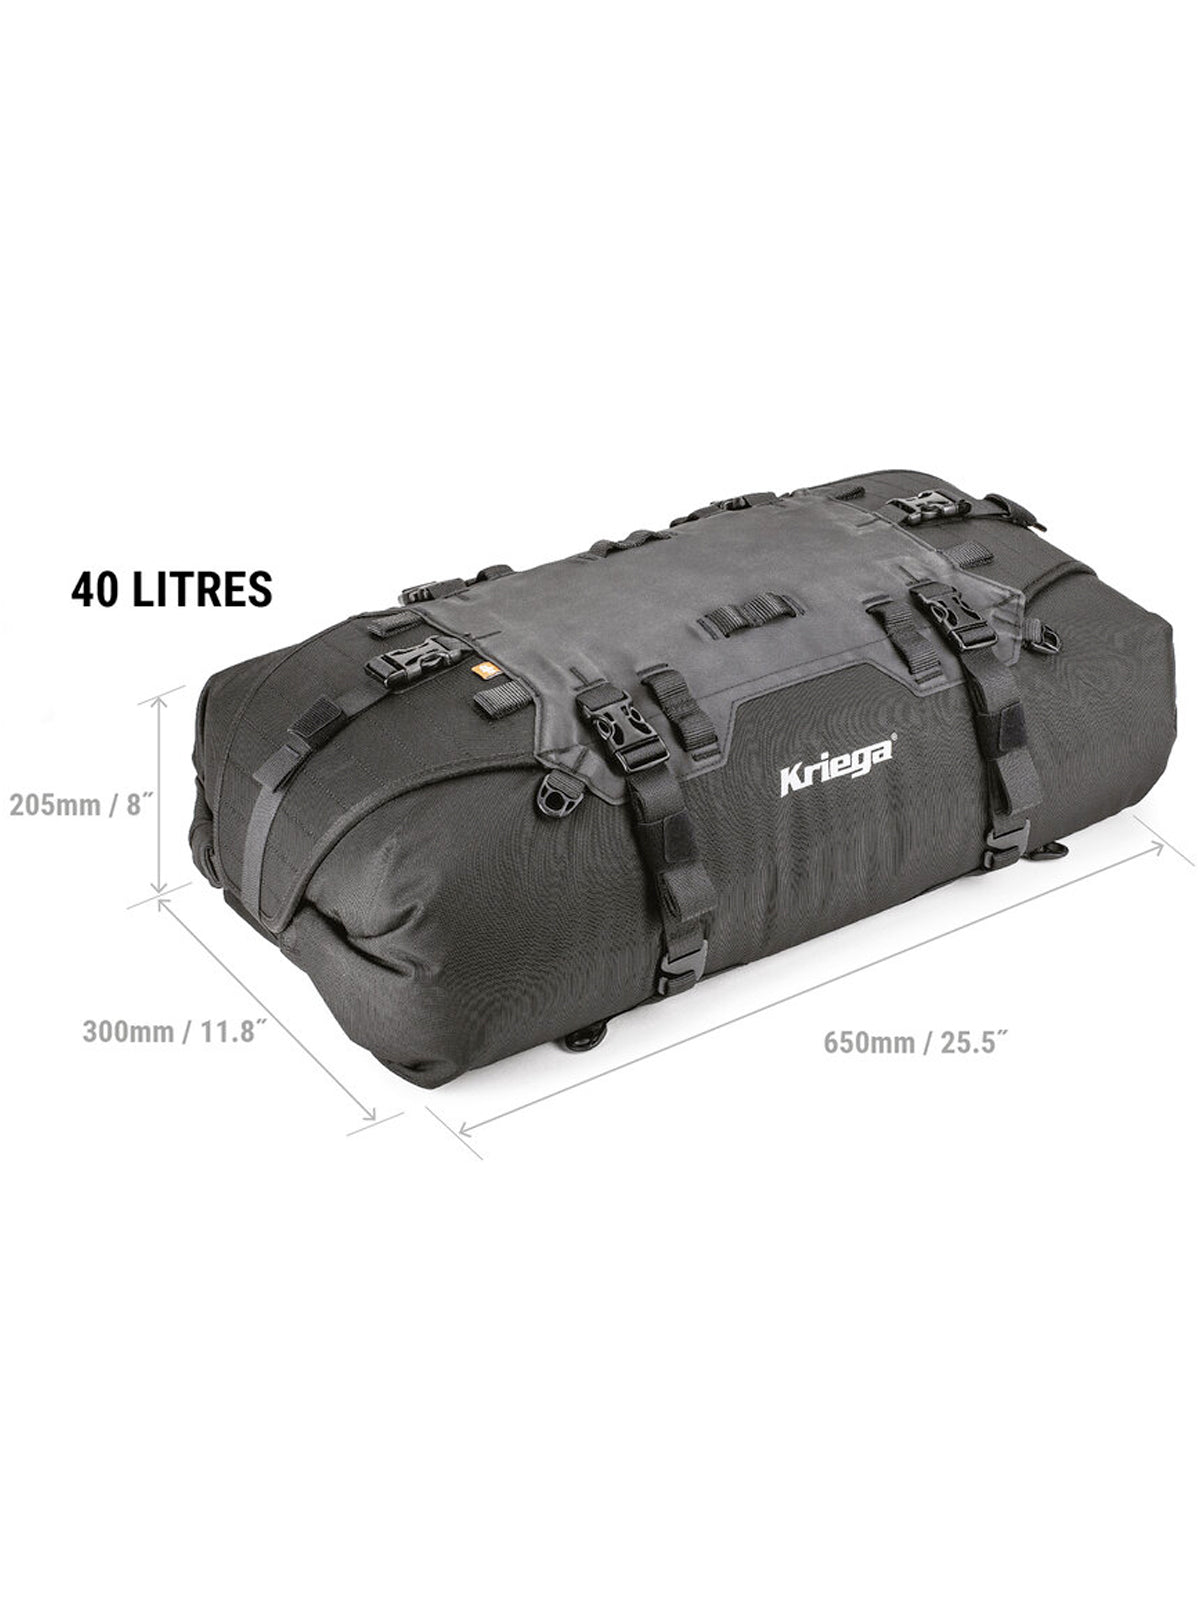 Kriega US40 Drypack Rackpack dimensions